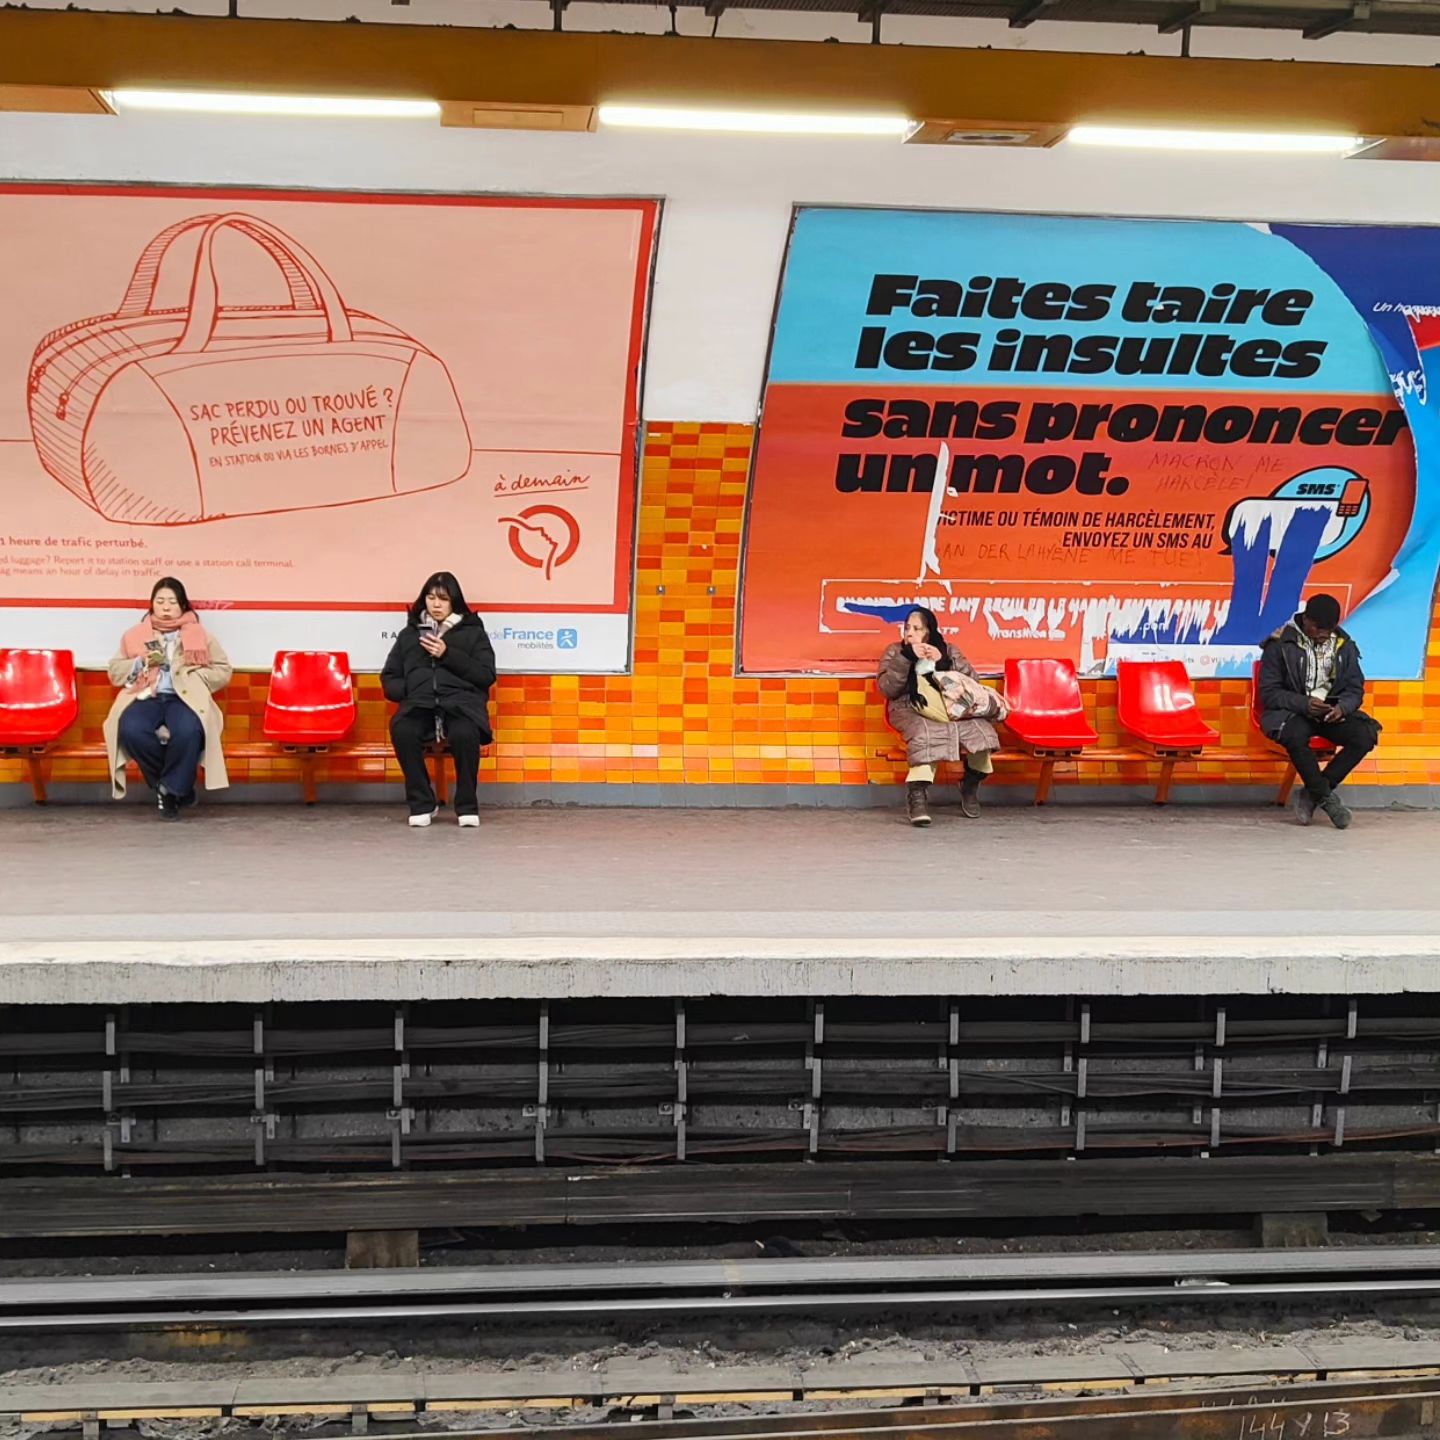 Bagage abandonné et insultes : tout l'esprit RATP résumé en deux publicités #transport #ratp #metro #paris #transportencommun #bagage #violence #publicité